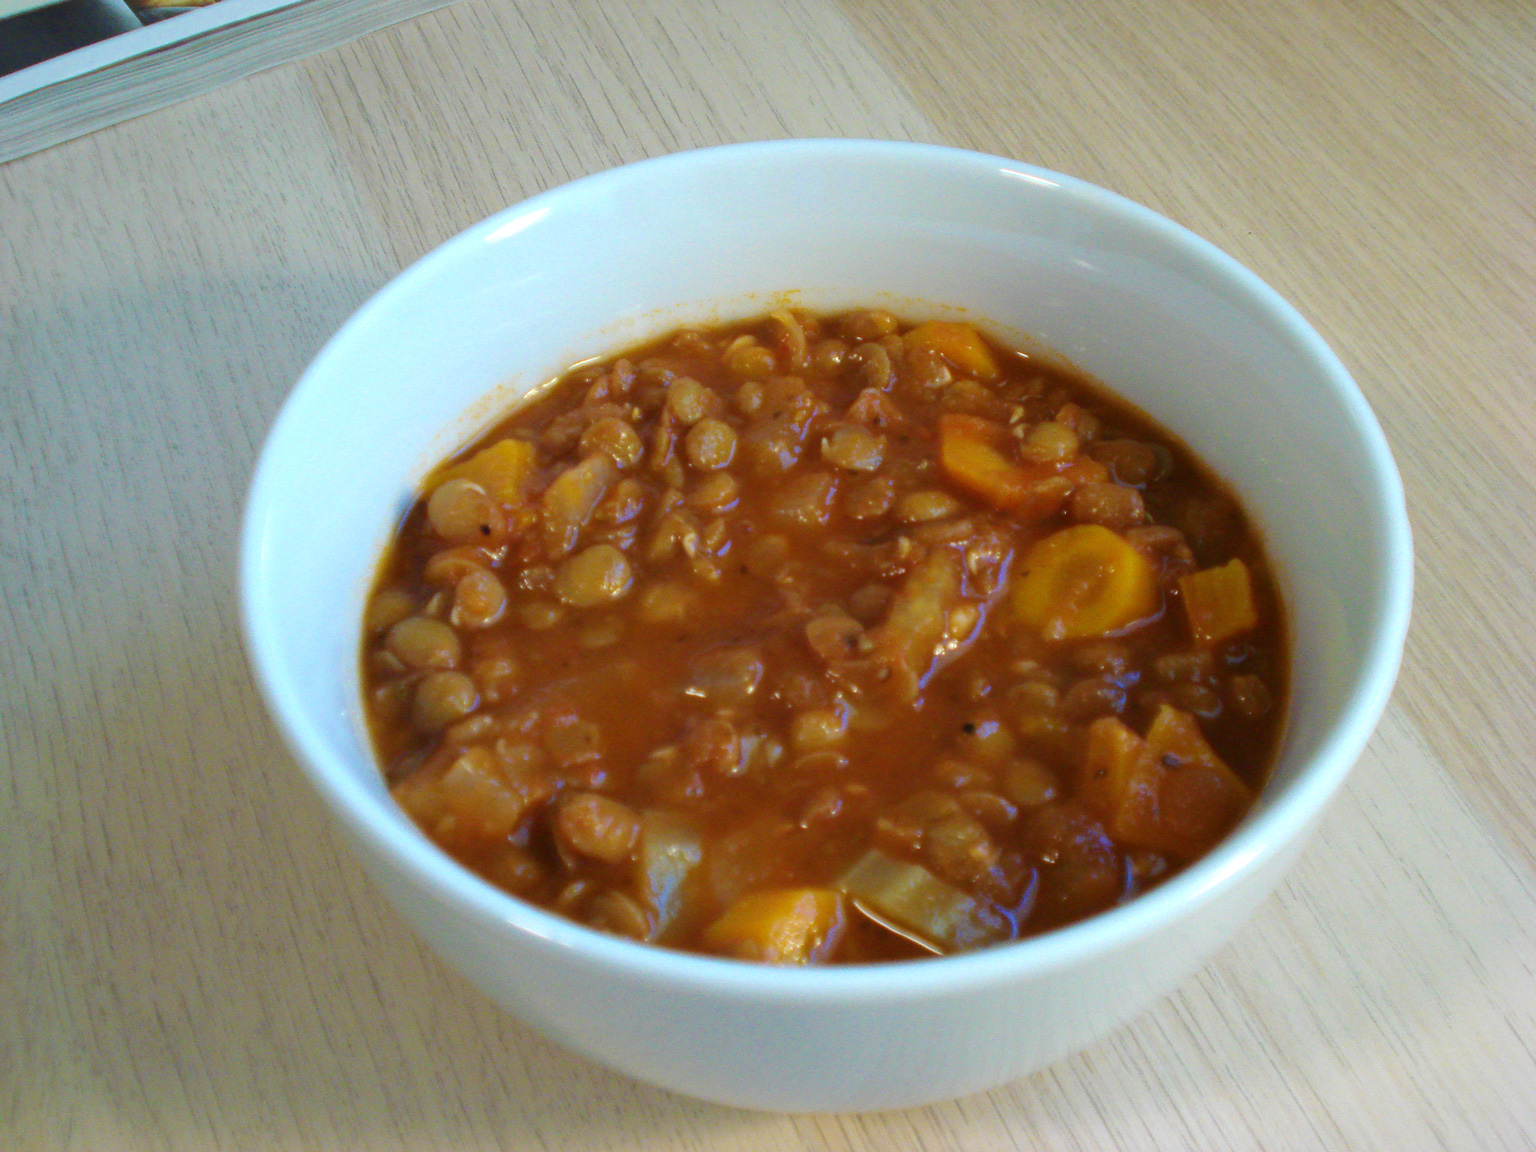 Hero image of finished lentil soup